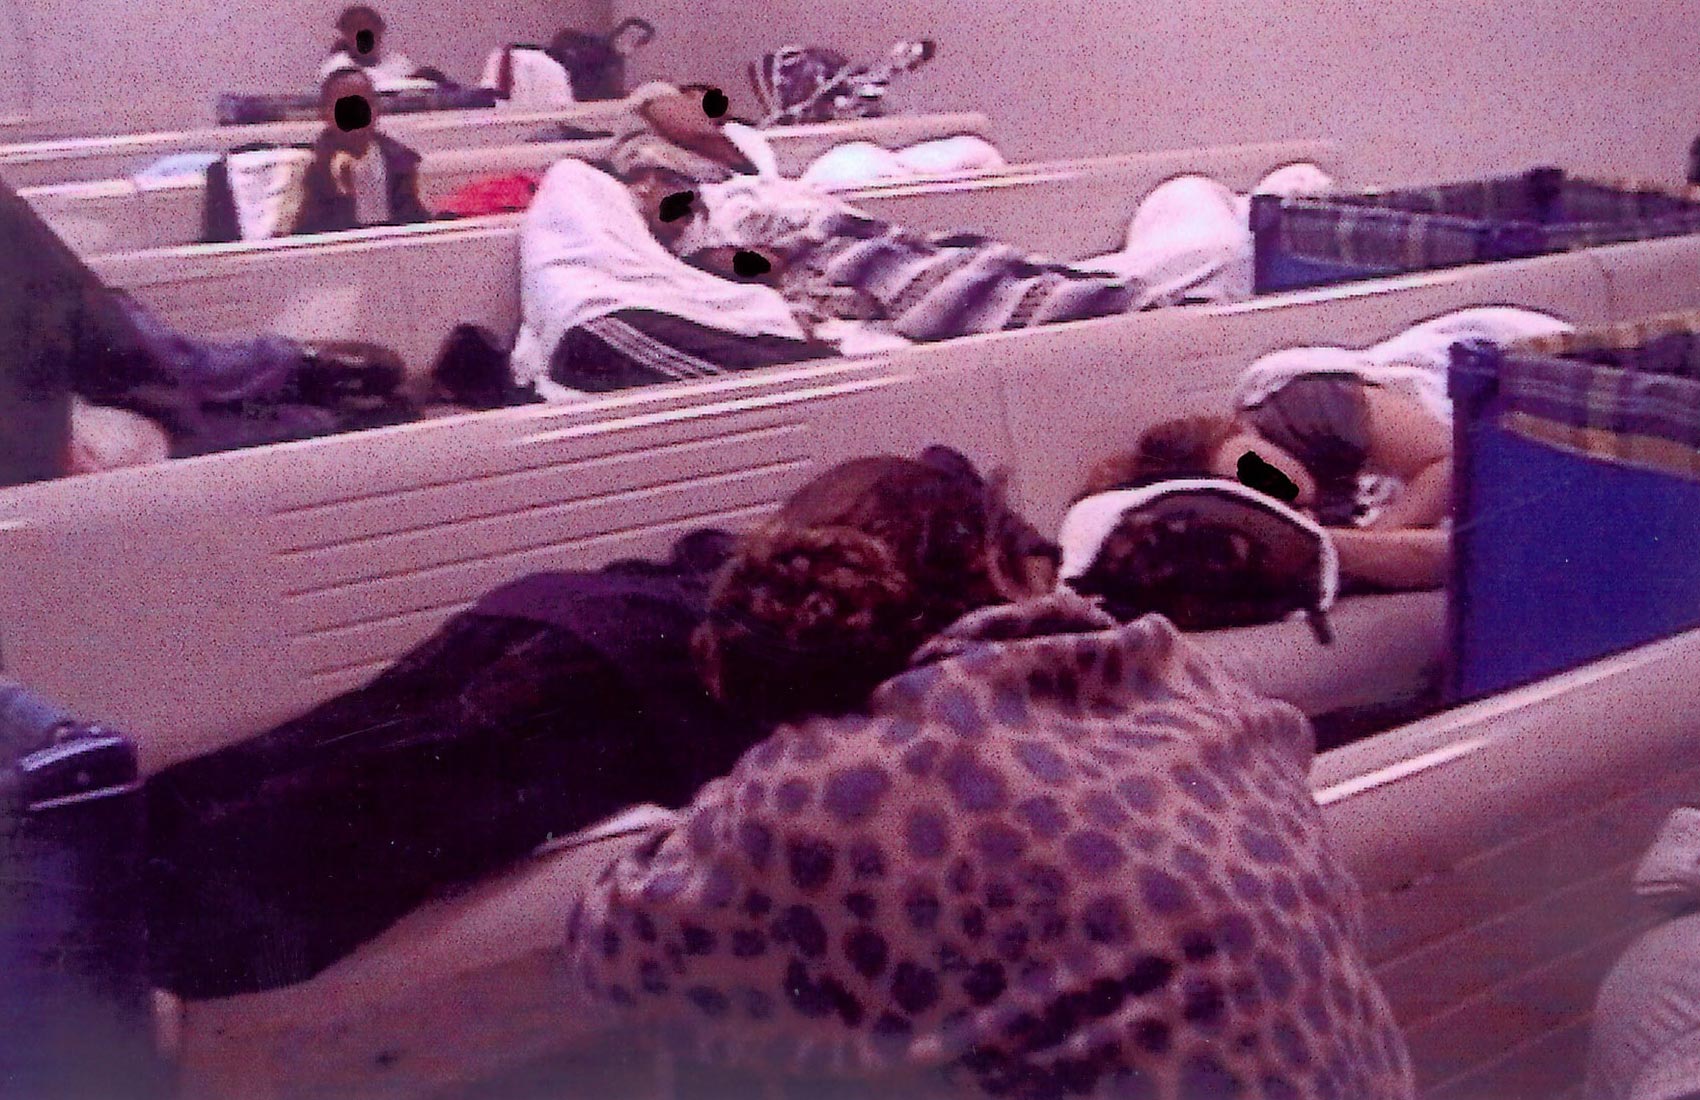 A 대기실의 벤치와 바닥에서 자고 있는 아이들이 있는 노숙자 가족